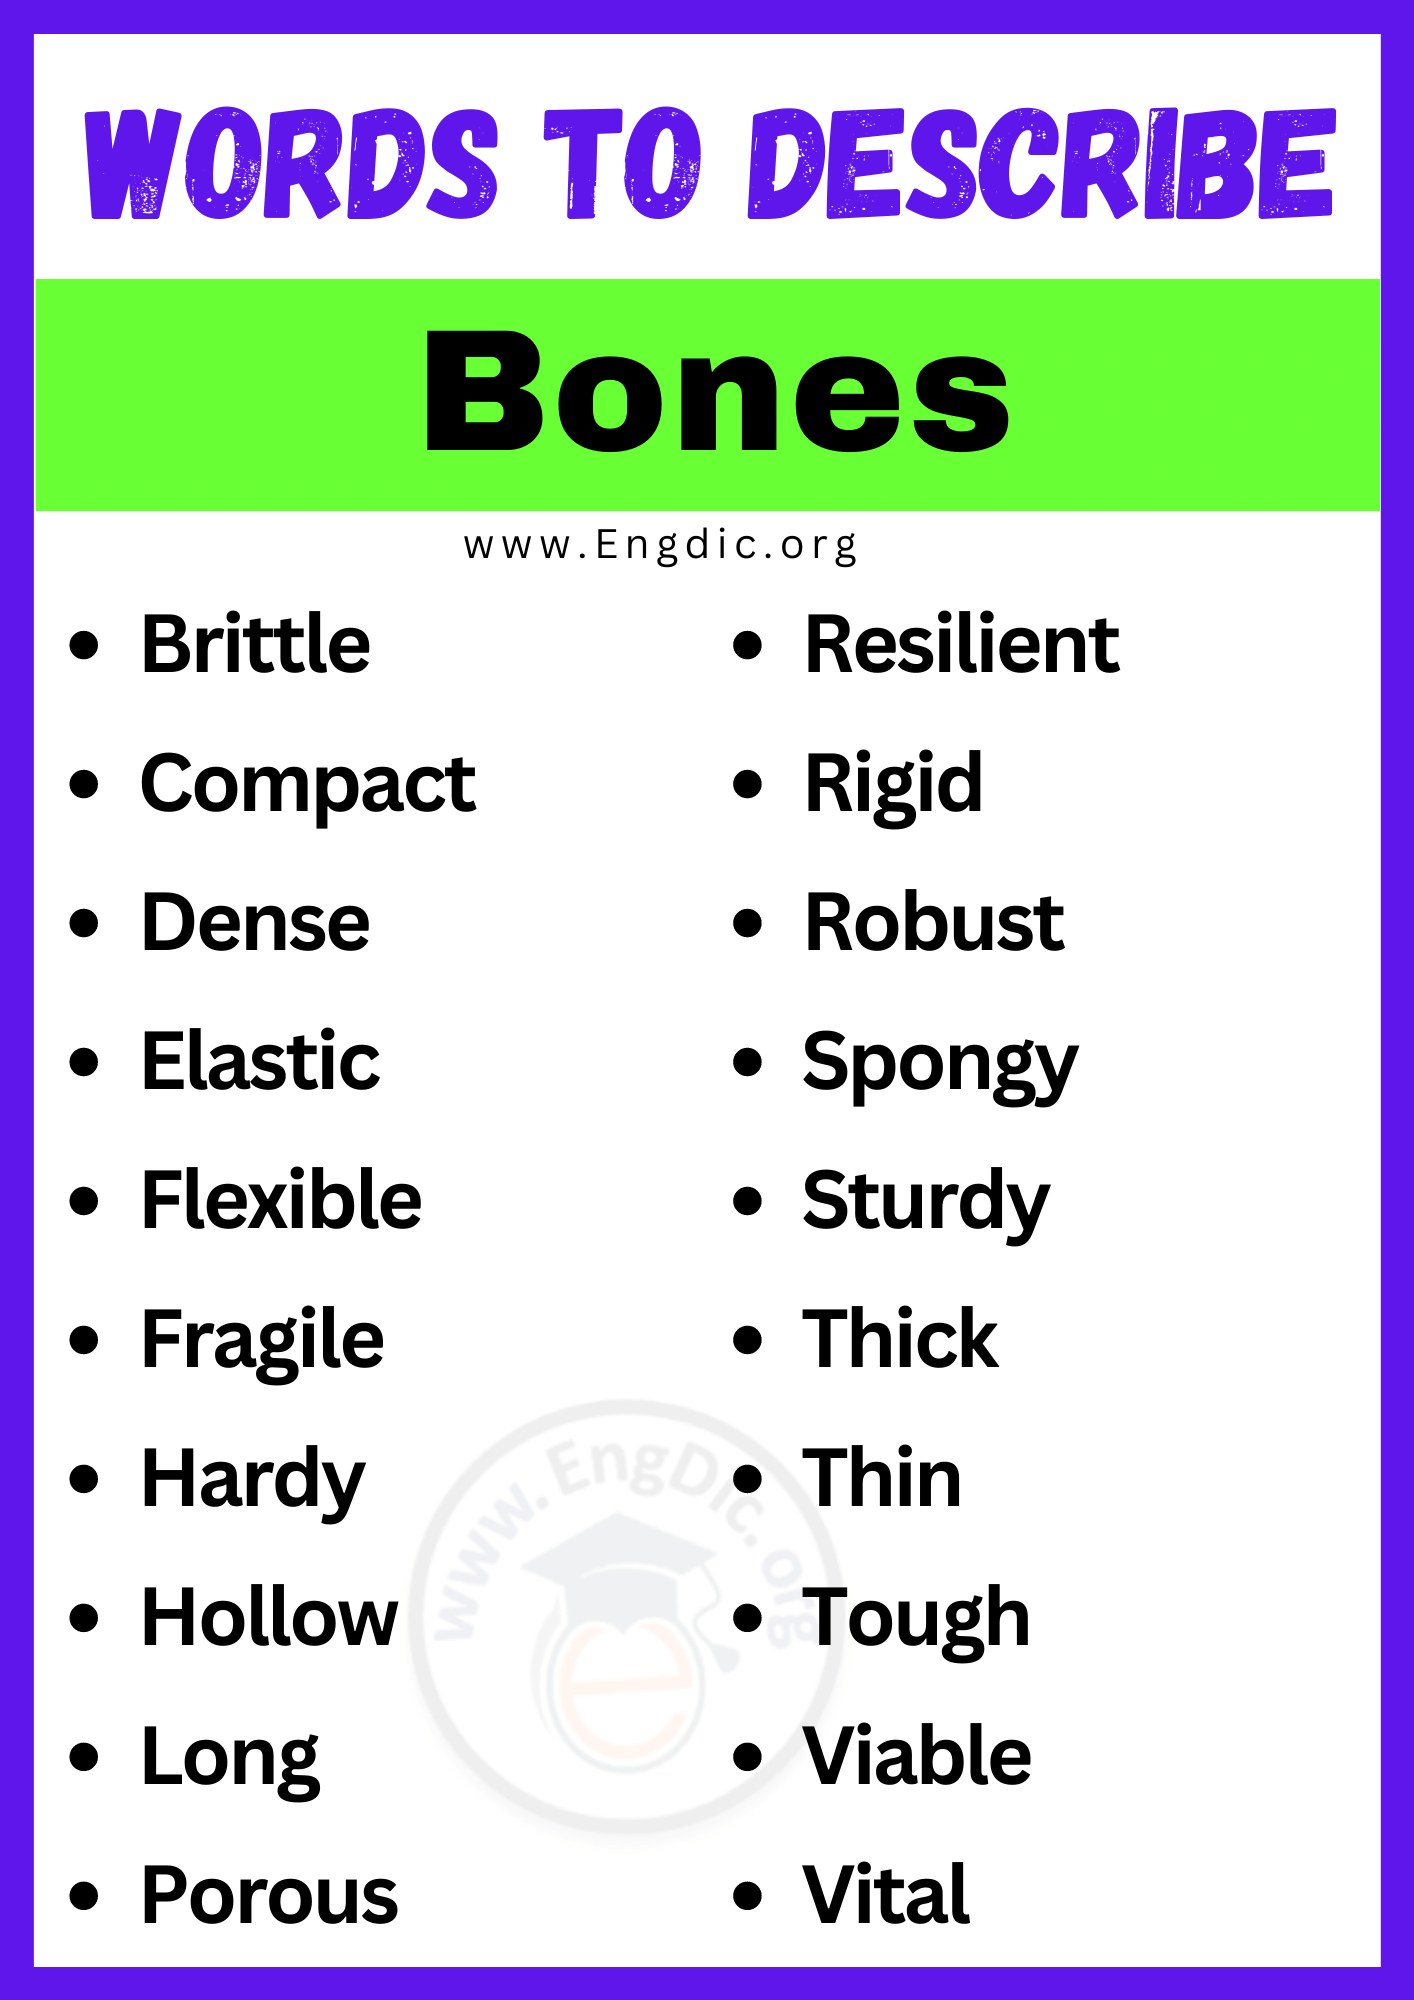 Words to Describe Bones